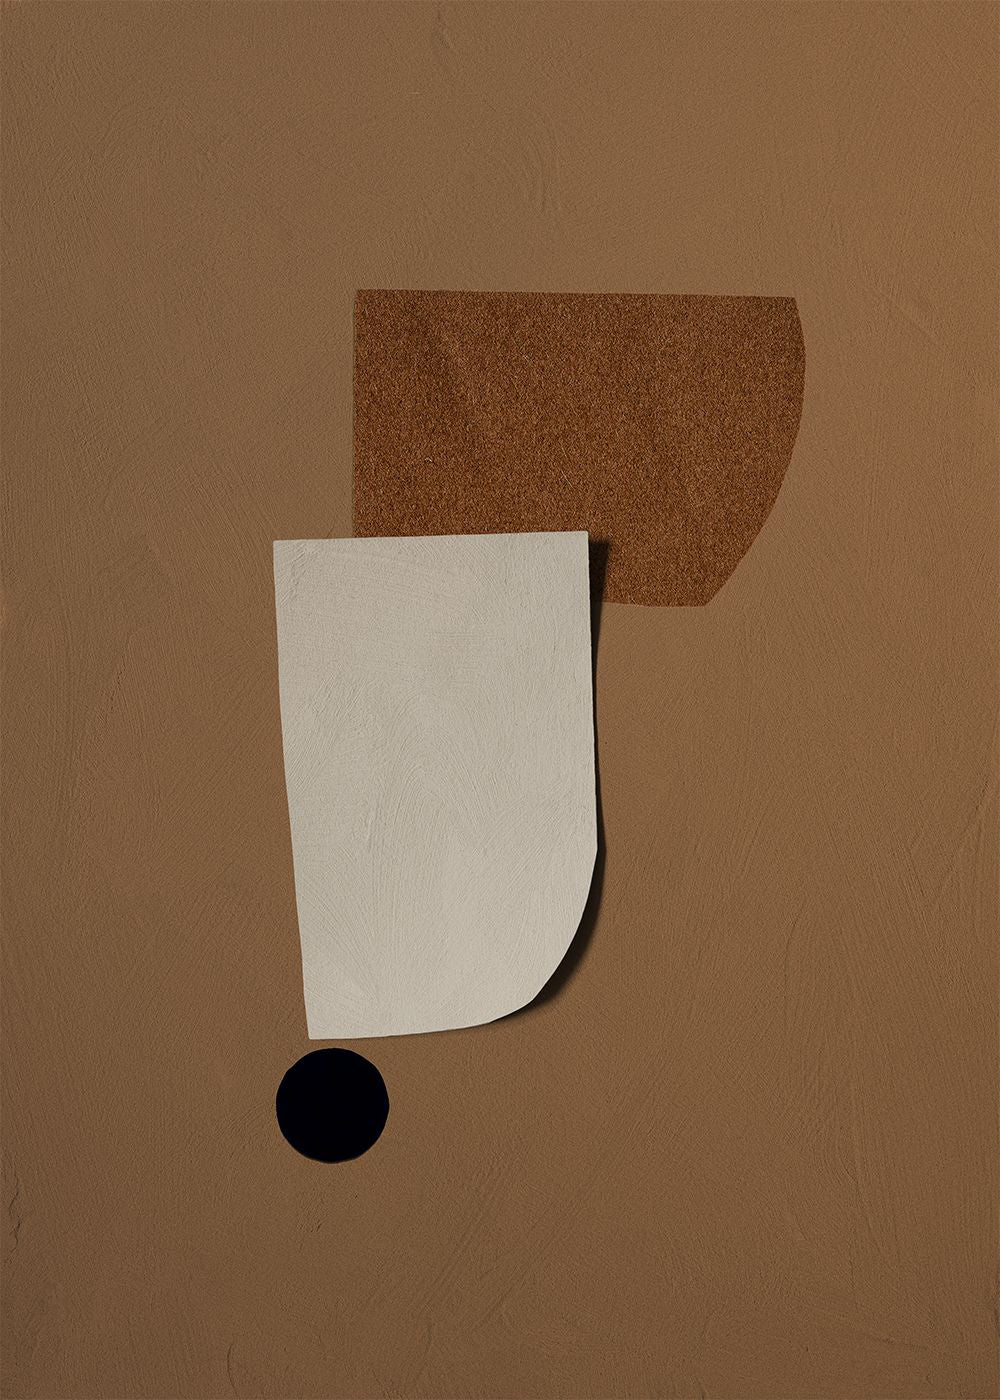 Paper Collective Point de basculement 02 Affiche, 50x70 cm